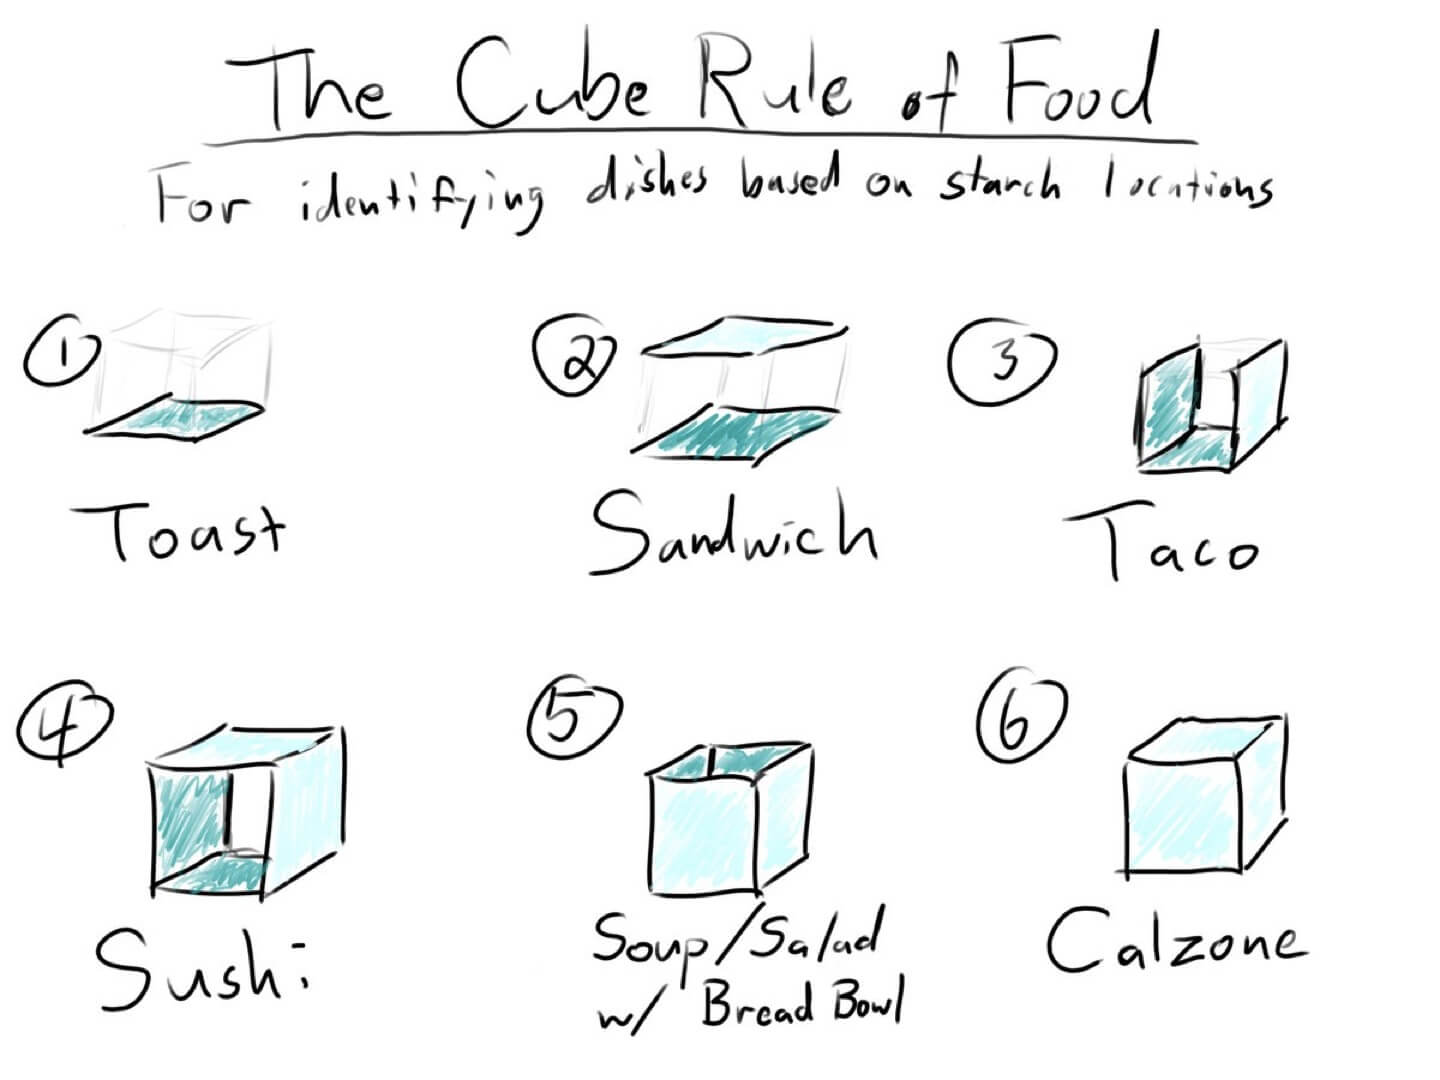 15_cube_rule.jpg